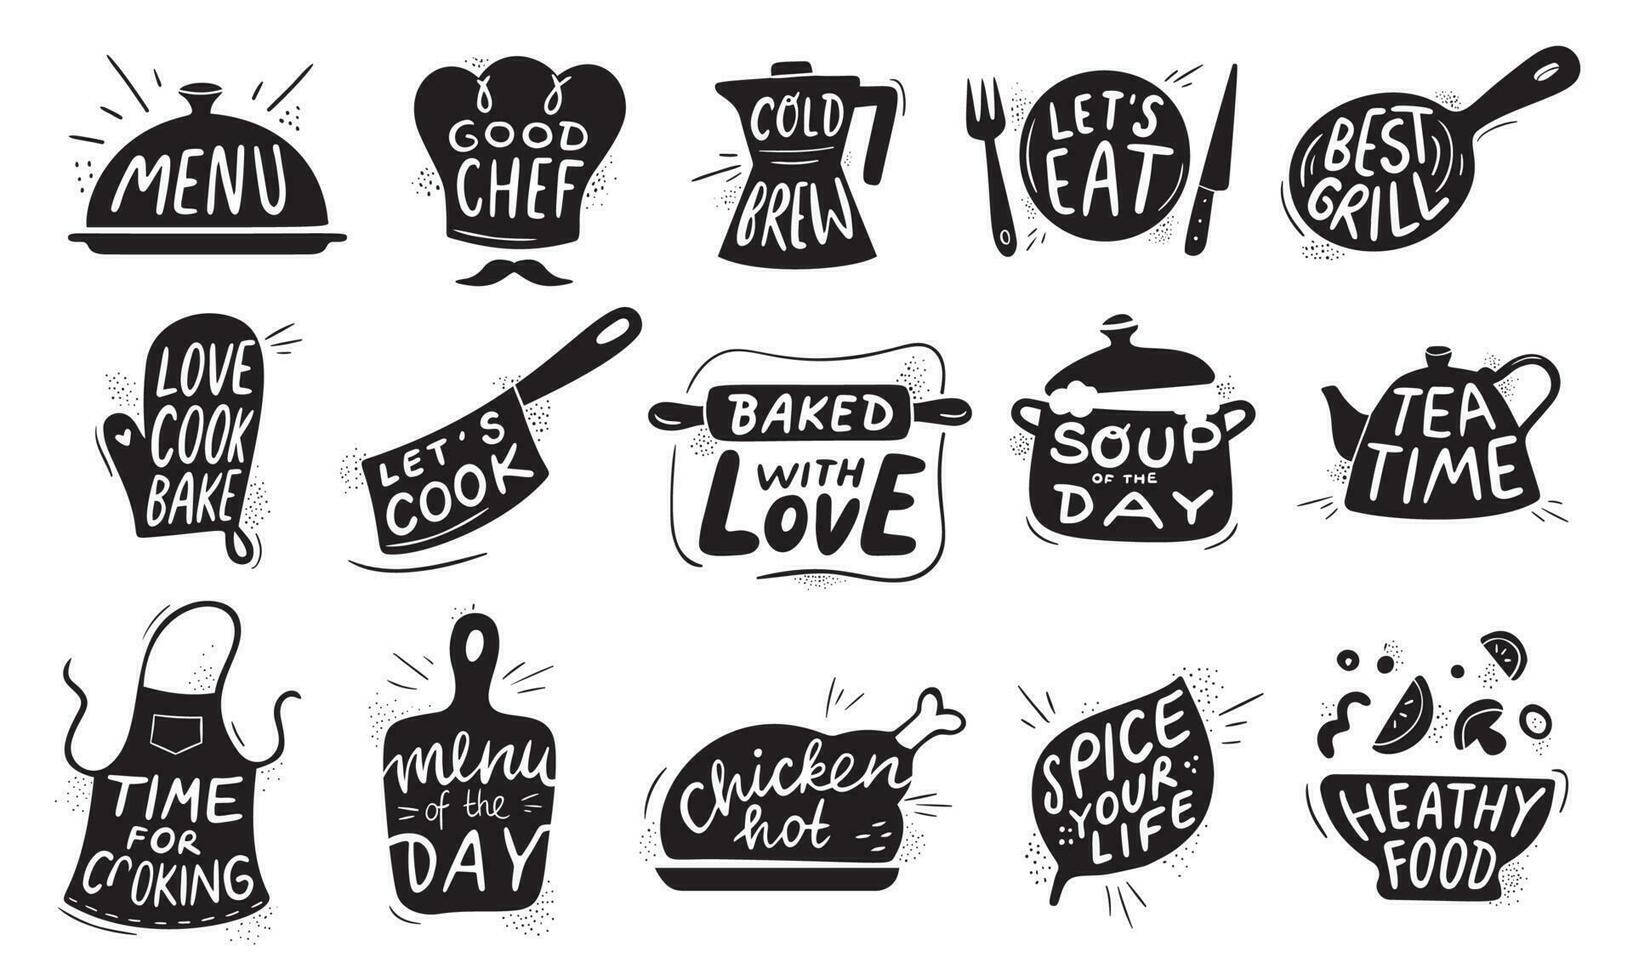 cuisine nourriture caractères. gourmet cuisine nourriture badge, poulet recettes cuisinier et restaurant menu lettrage vecteur illustration ensemble